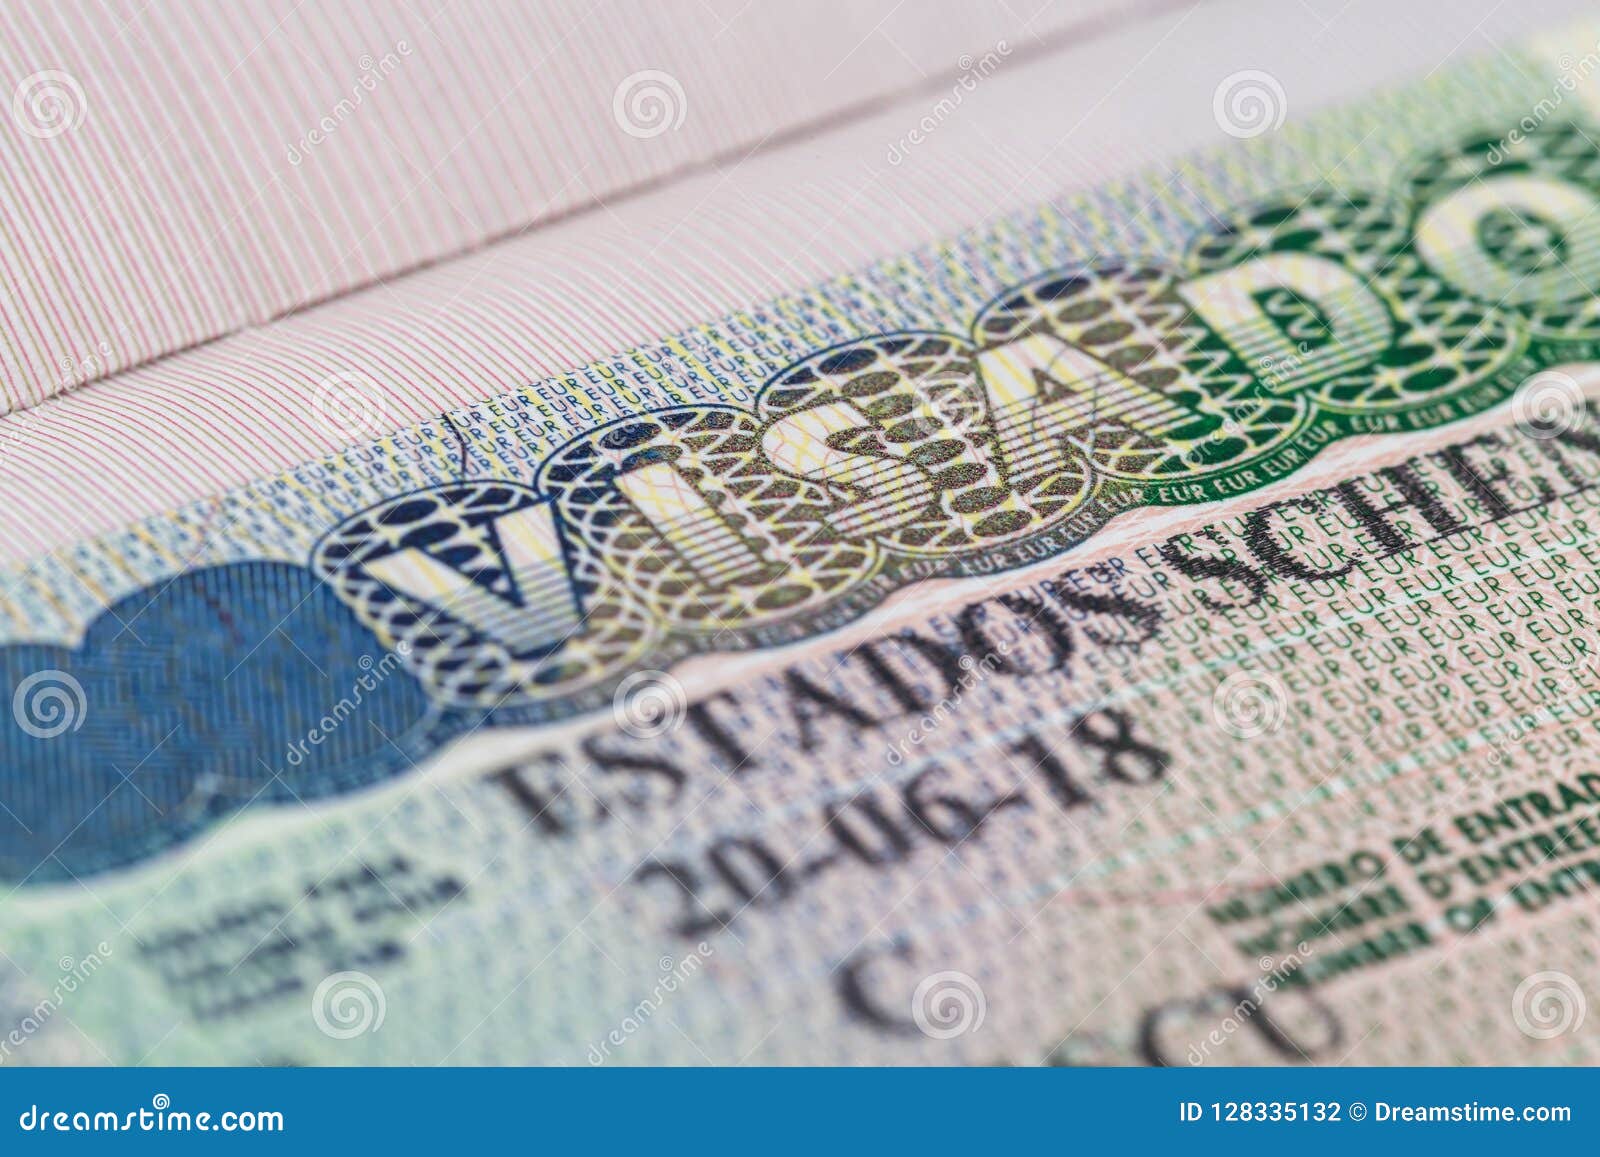 schengen tourist visa spain